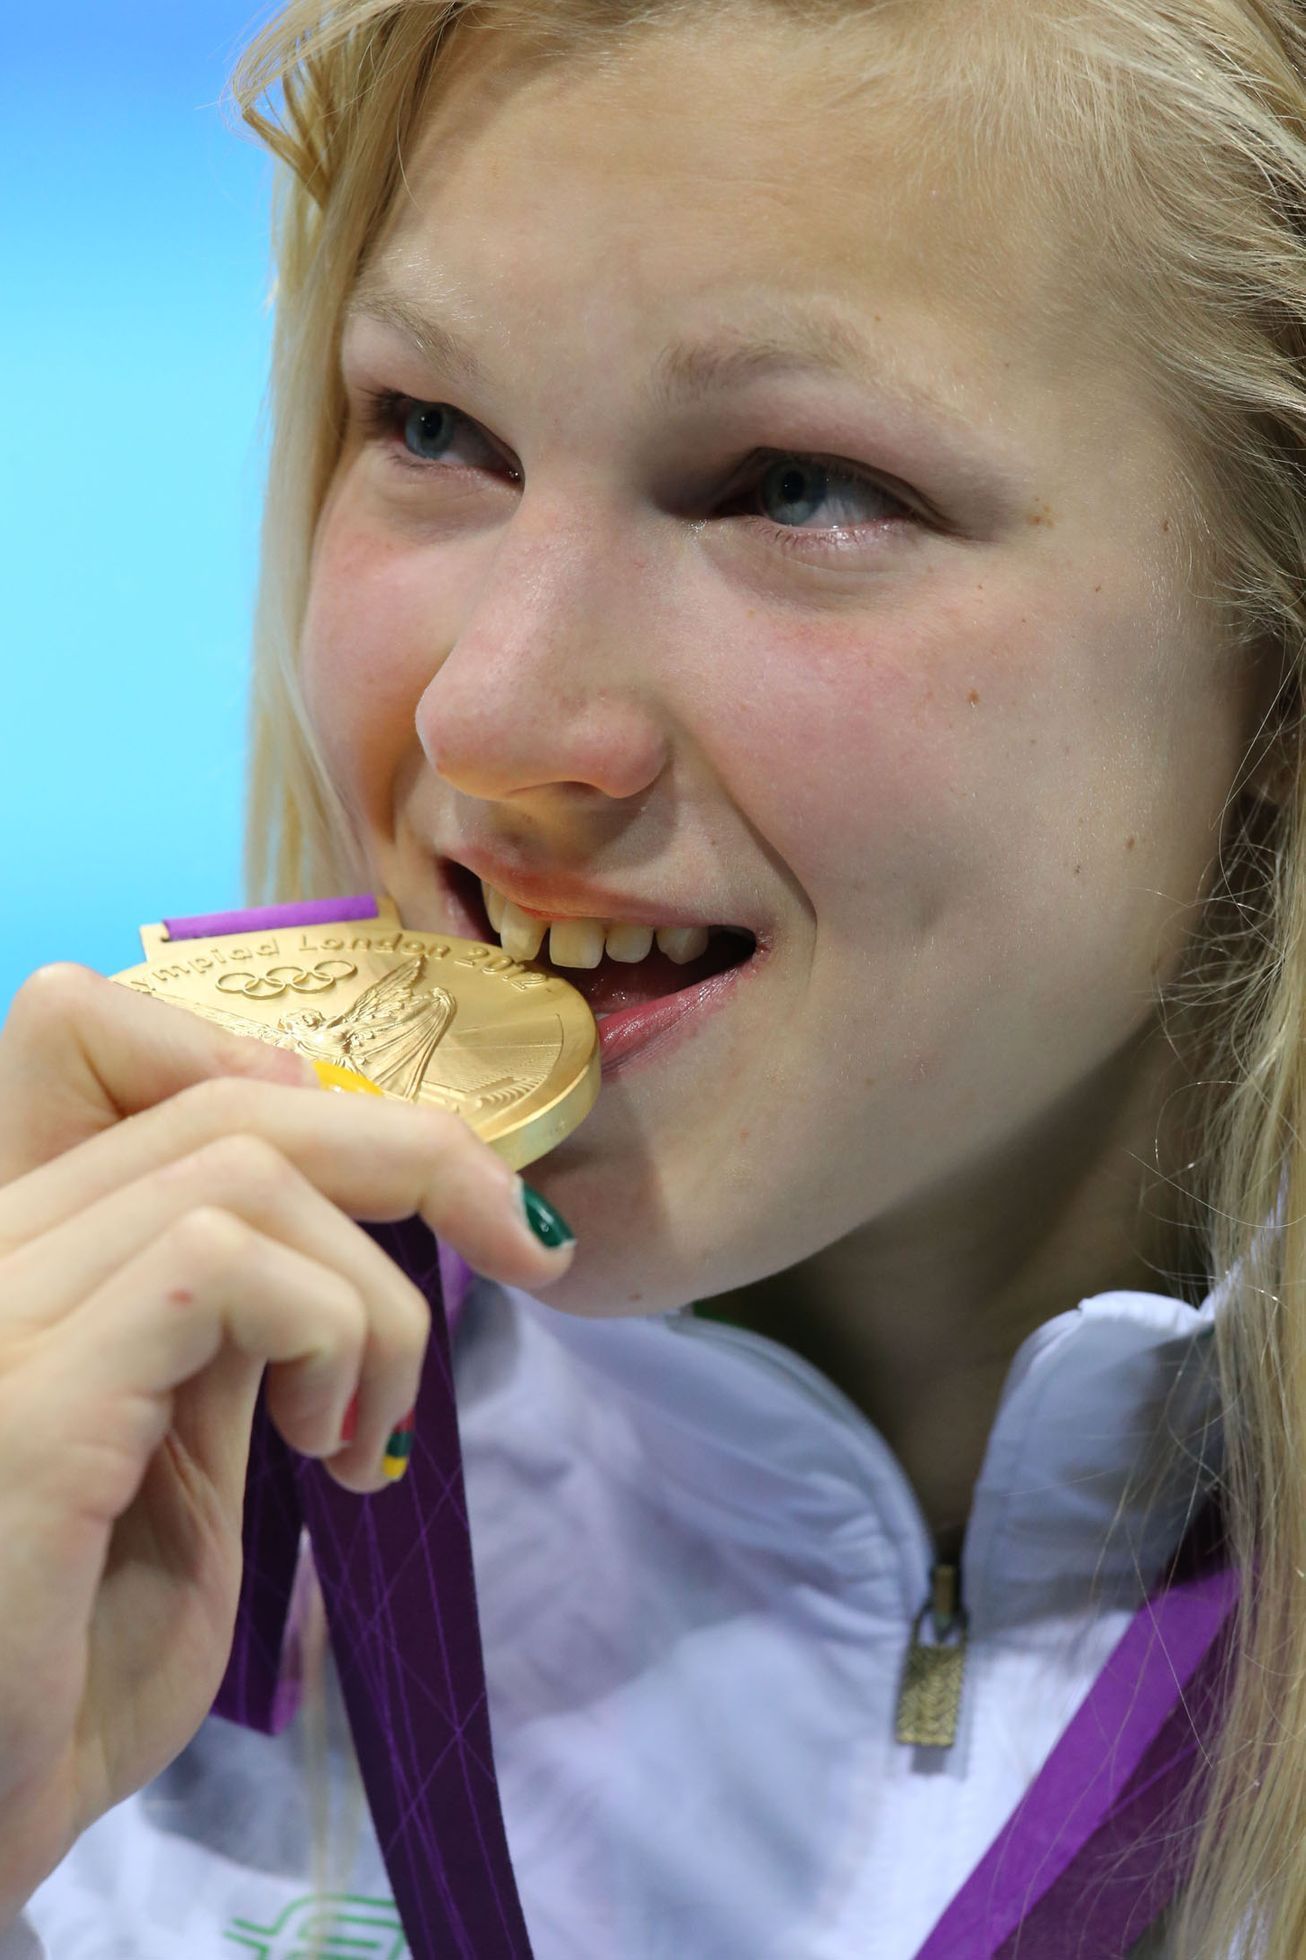 Litevská plavkyně Ruta Meilutyteová se zlatou medailí na OH v Londýně 2012